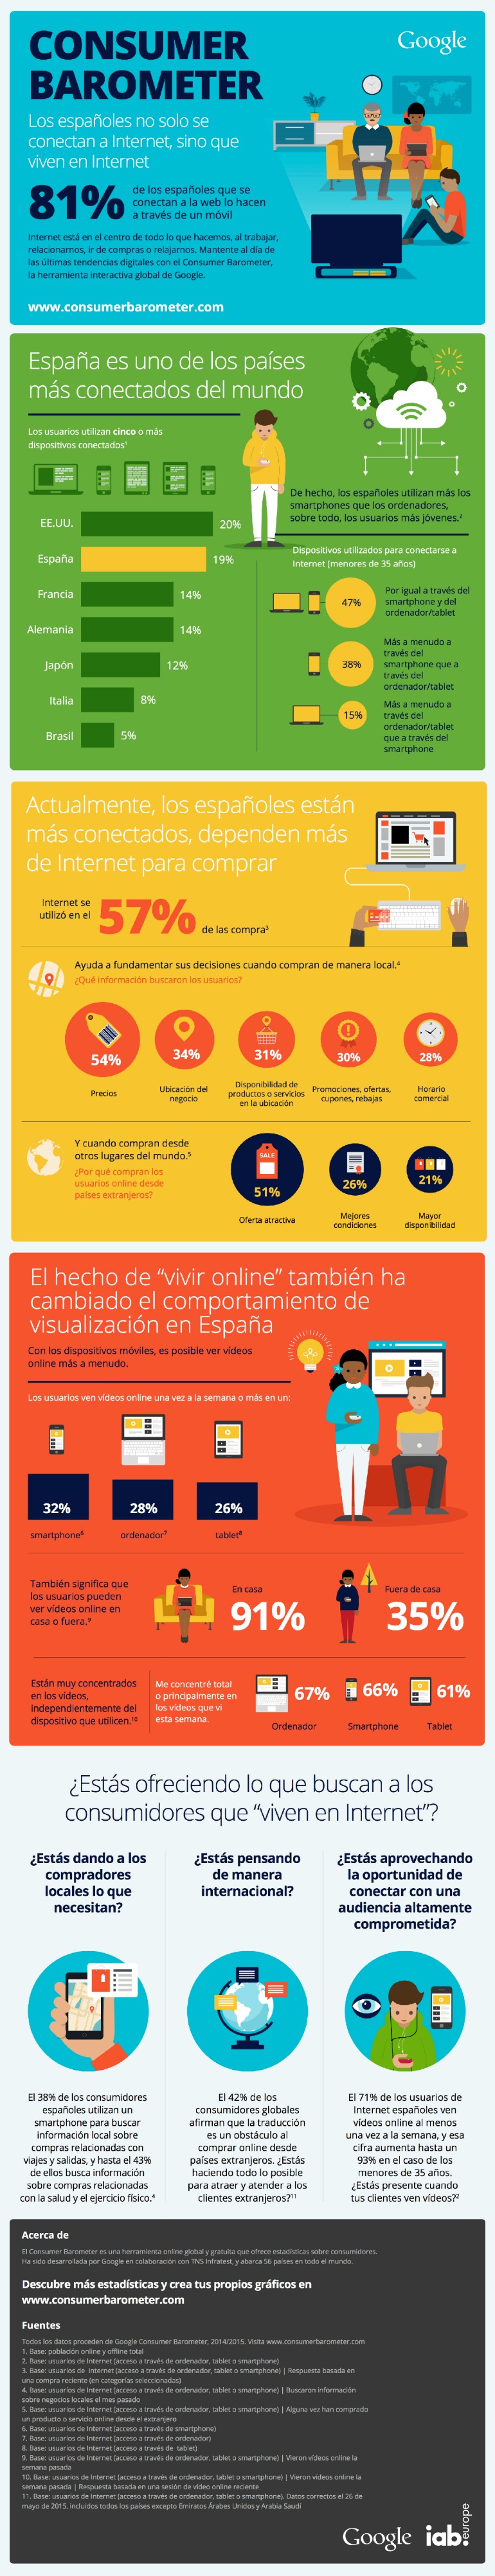 Barómetro-de-Google-sobre-los-internautas-españoles